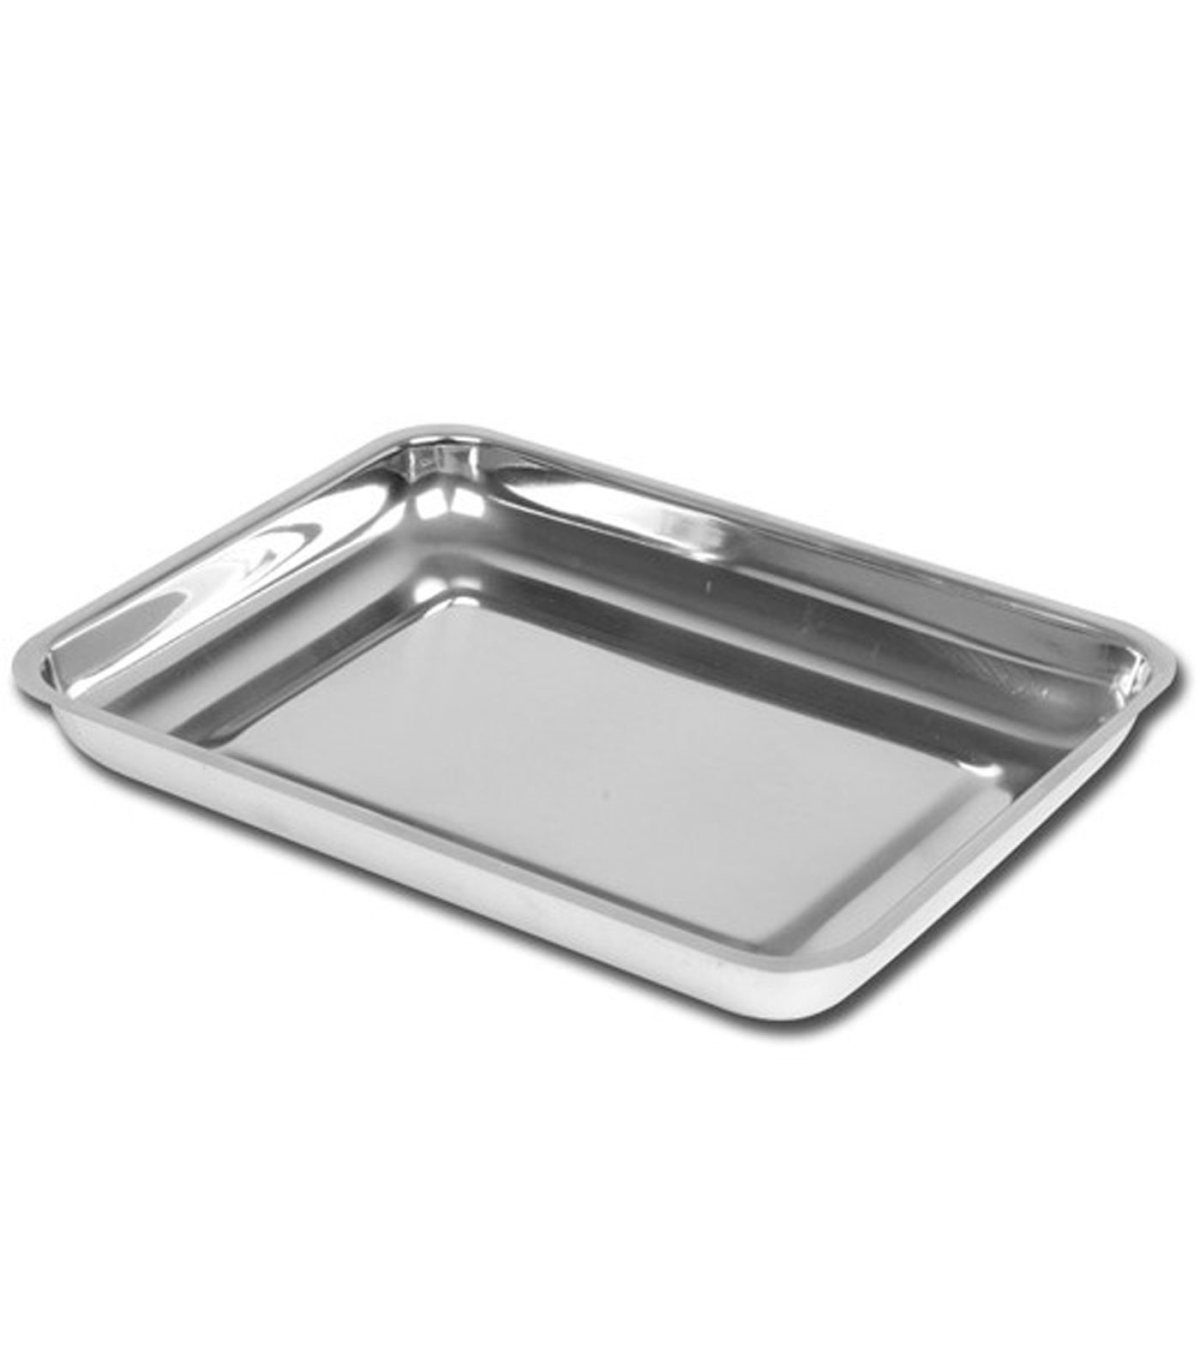 Tradineur - Bandeja de aluminio rectangular, ideal para hornear, higiénica  y resistente, recetas al horno, postres, verduras, as